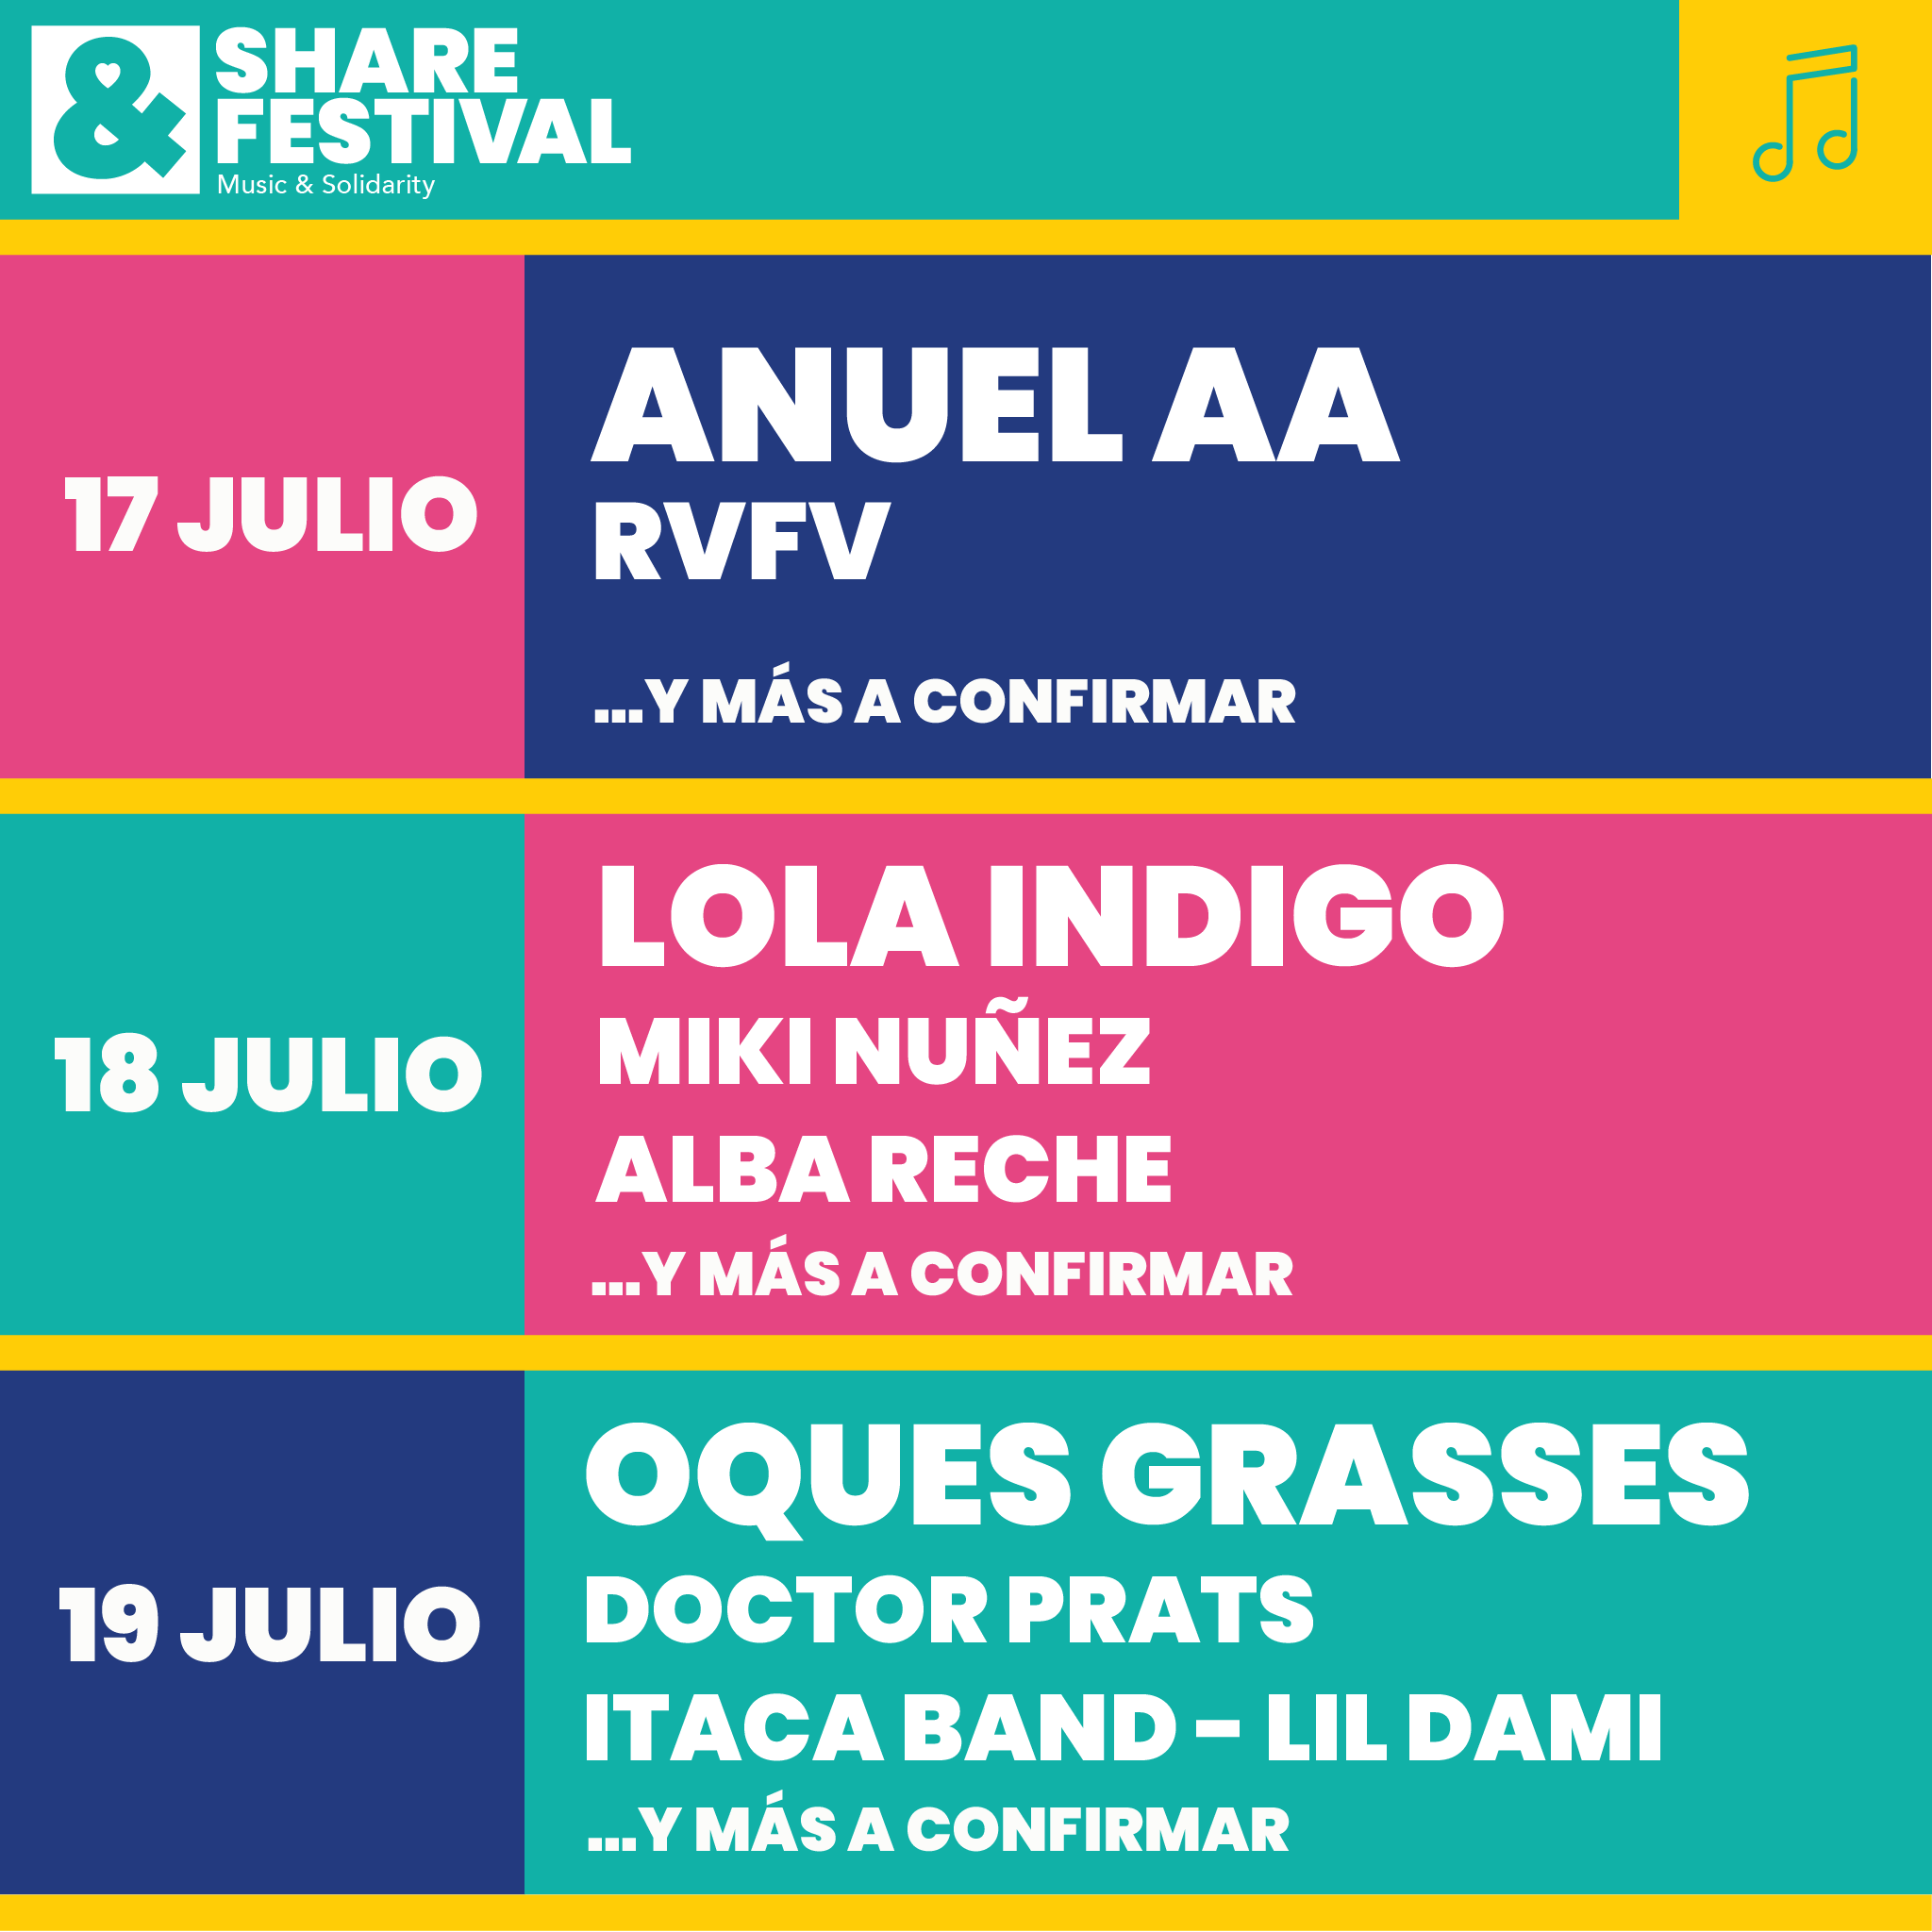 Share Festival 2020 anuncia sus primeros confirmados con Anuel AA, Lola Indigo, Miki Núñez o Alba Reche